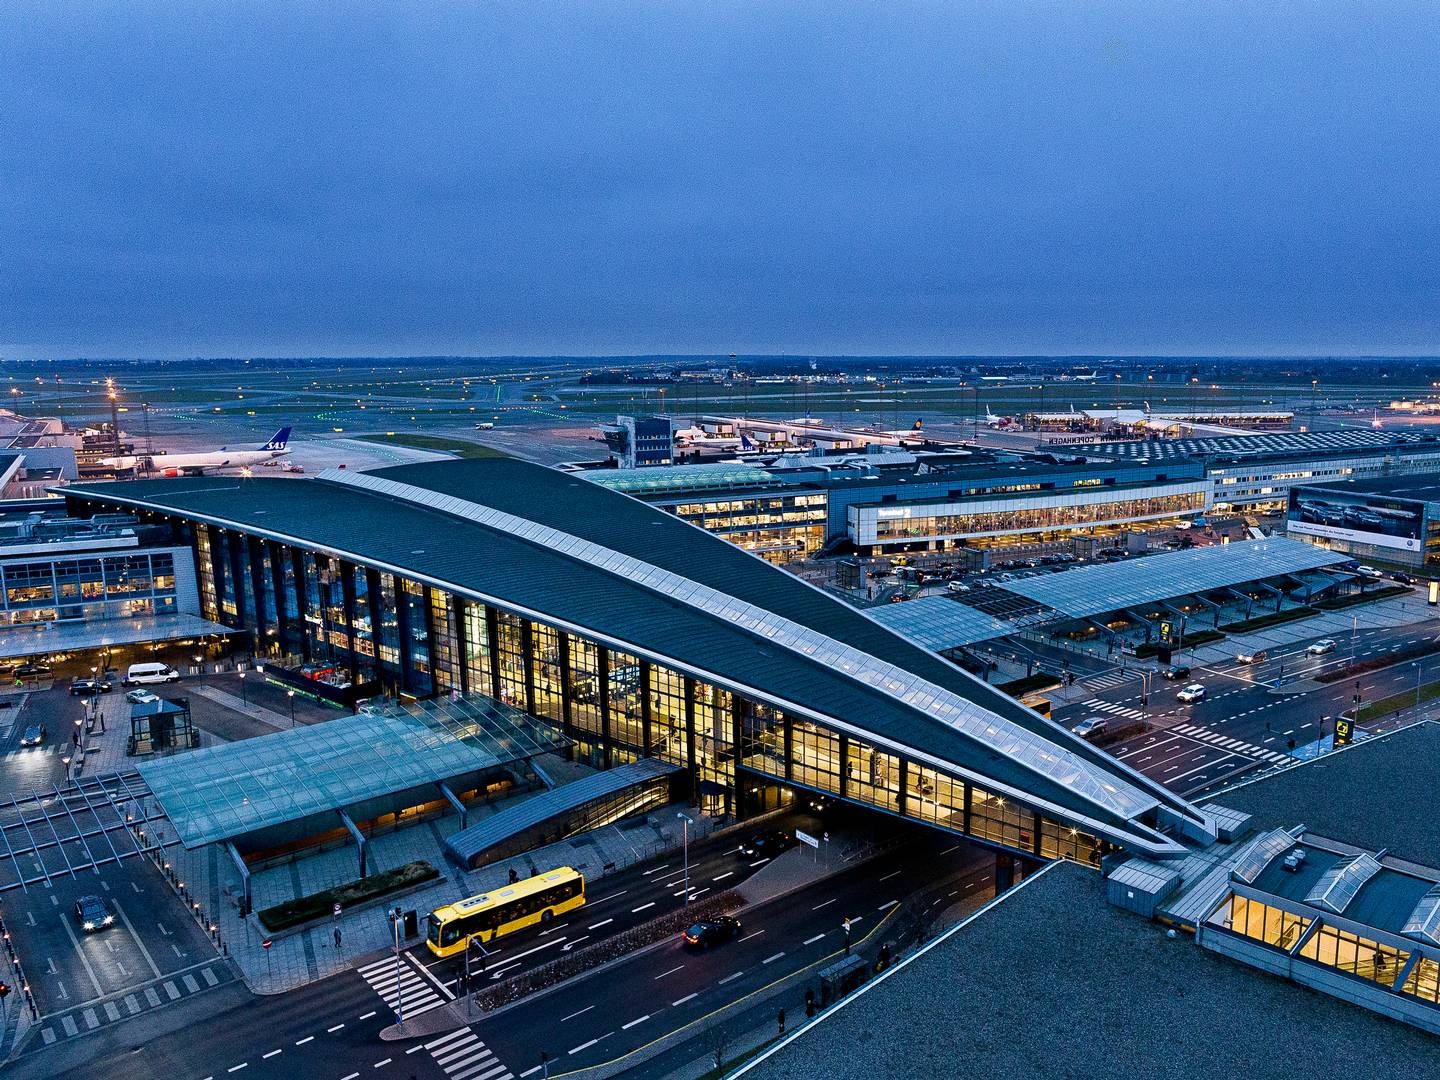 Foto: Pr / Københavns Lufthavn